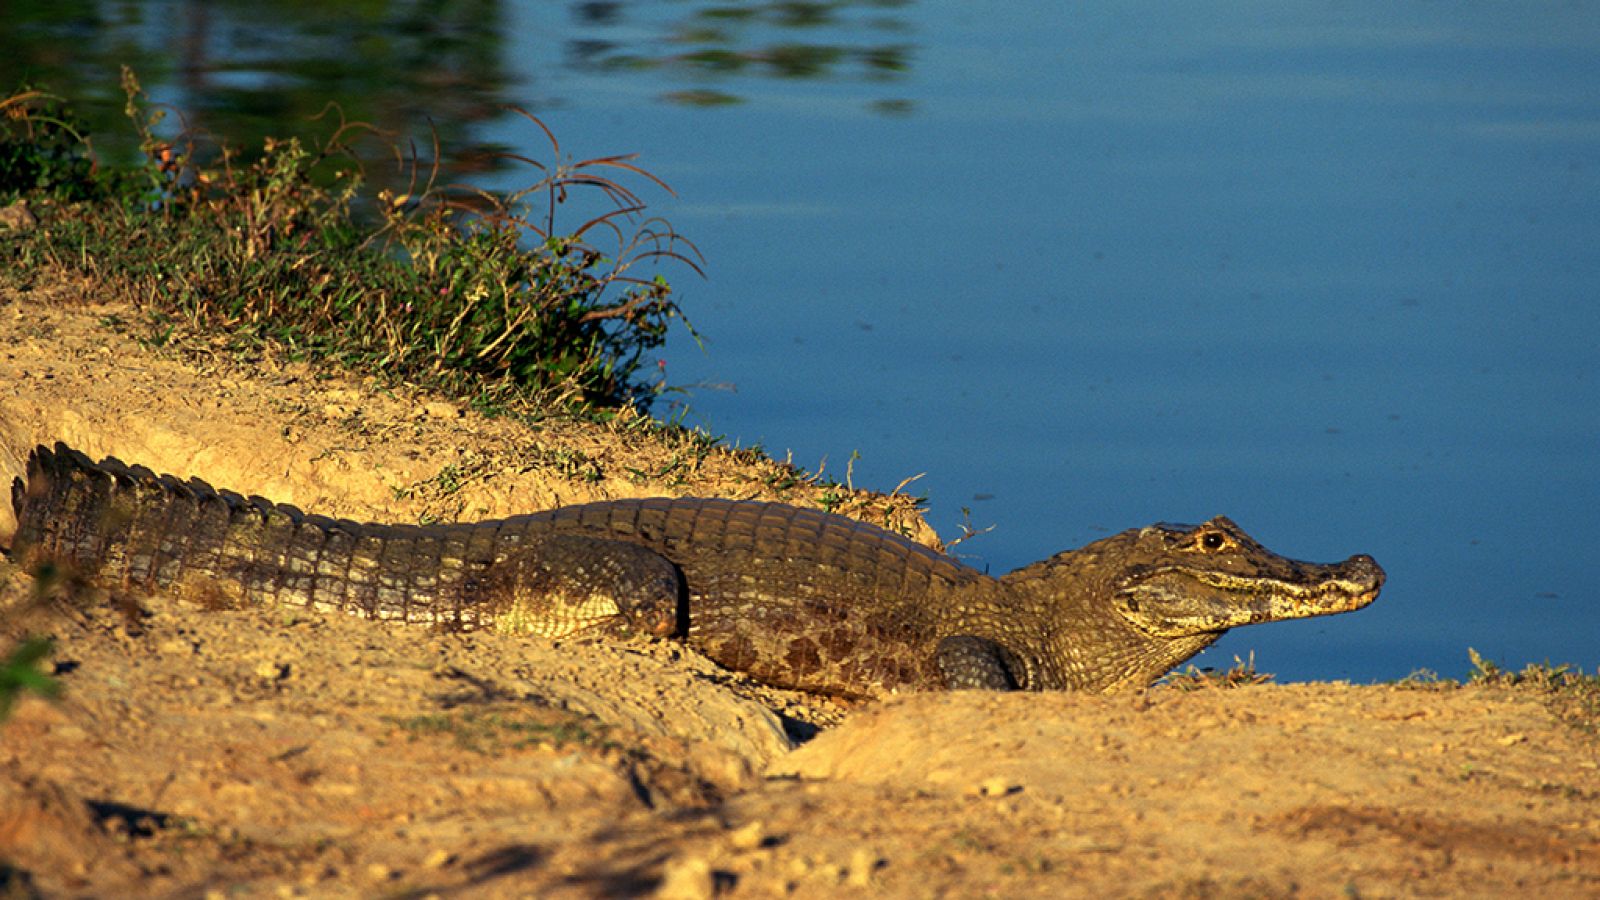 Grandes documentales - Latinoamérica salvaje: El Pantanal, el corazón salvaje de Brasil